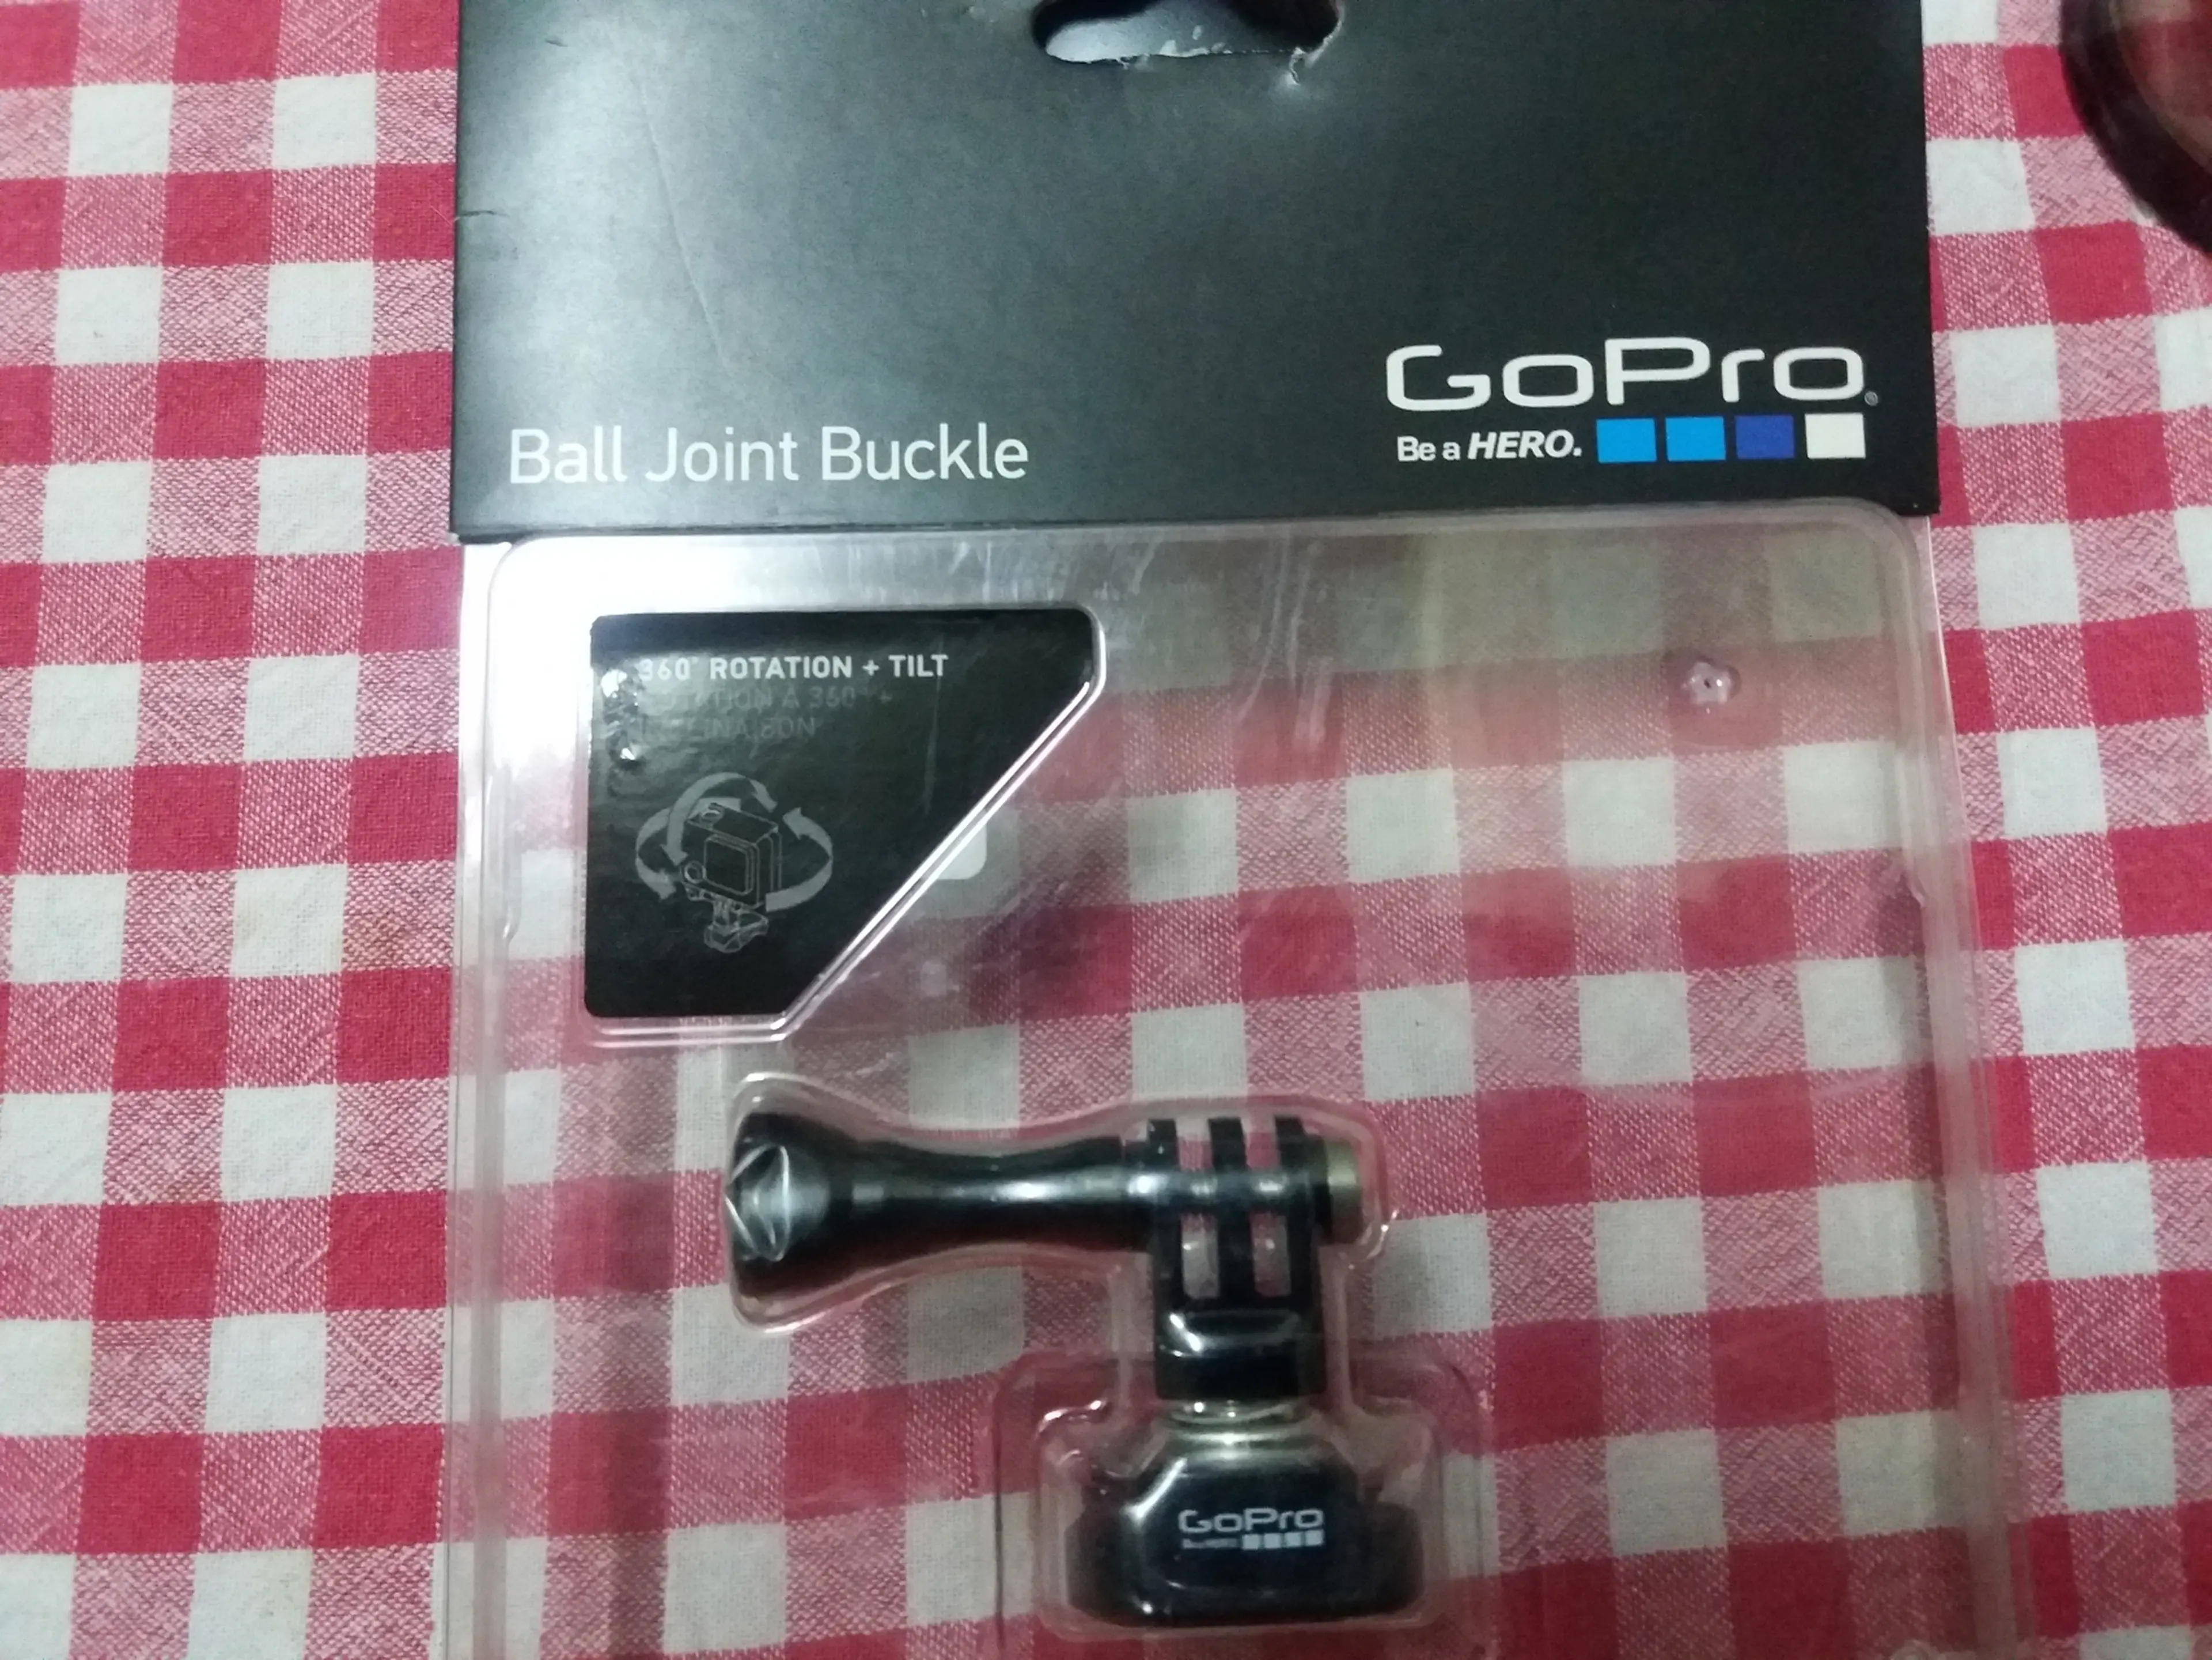 1. GoPro - Ball Joint Buckle - prindere rapida cu articulatie pivotanta rotire 360°